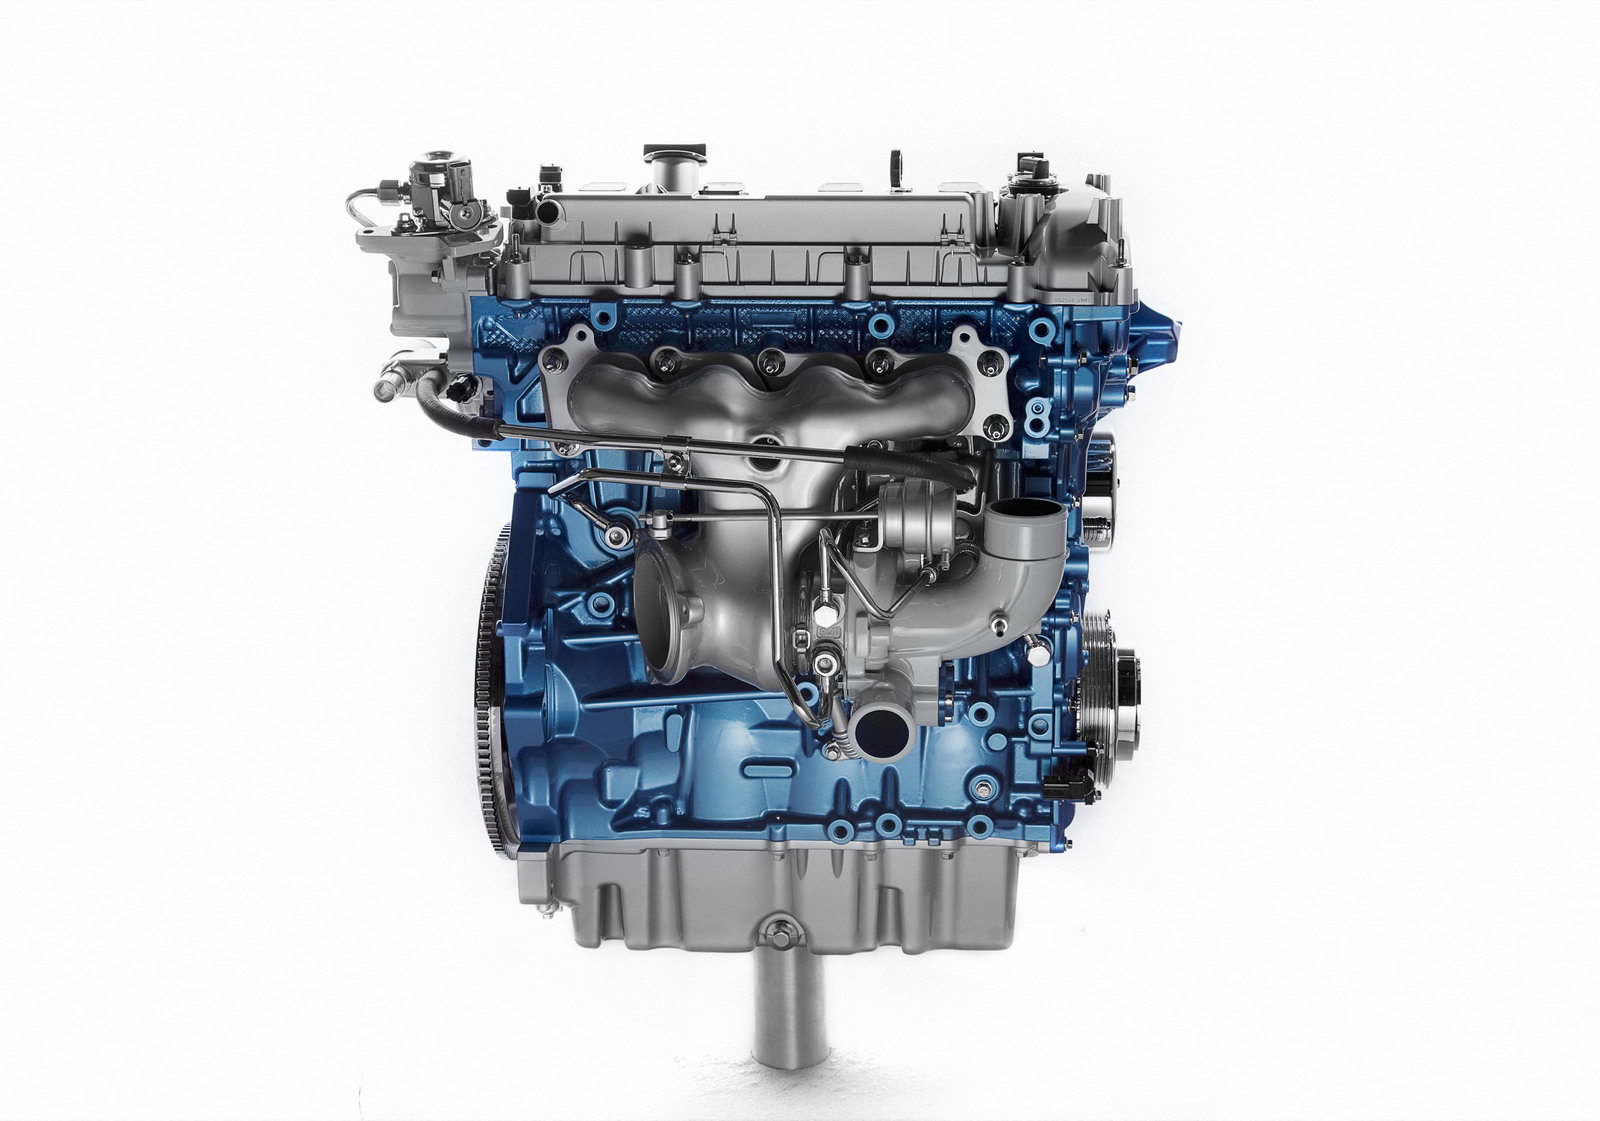 Ford Confirms 3.5-liter V6 EcoBoost Turbo for F-150, 2.0-liter Turbo